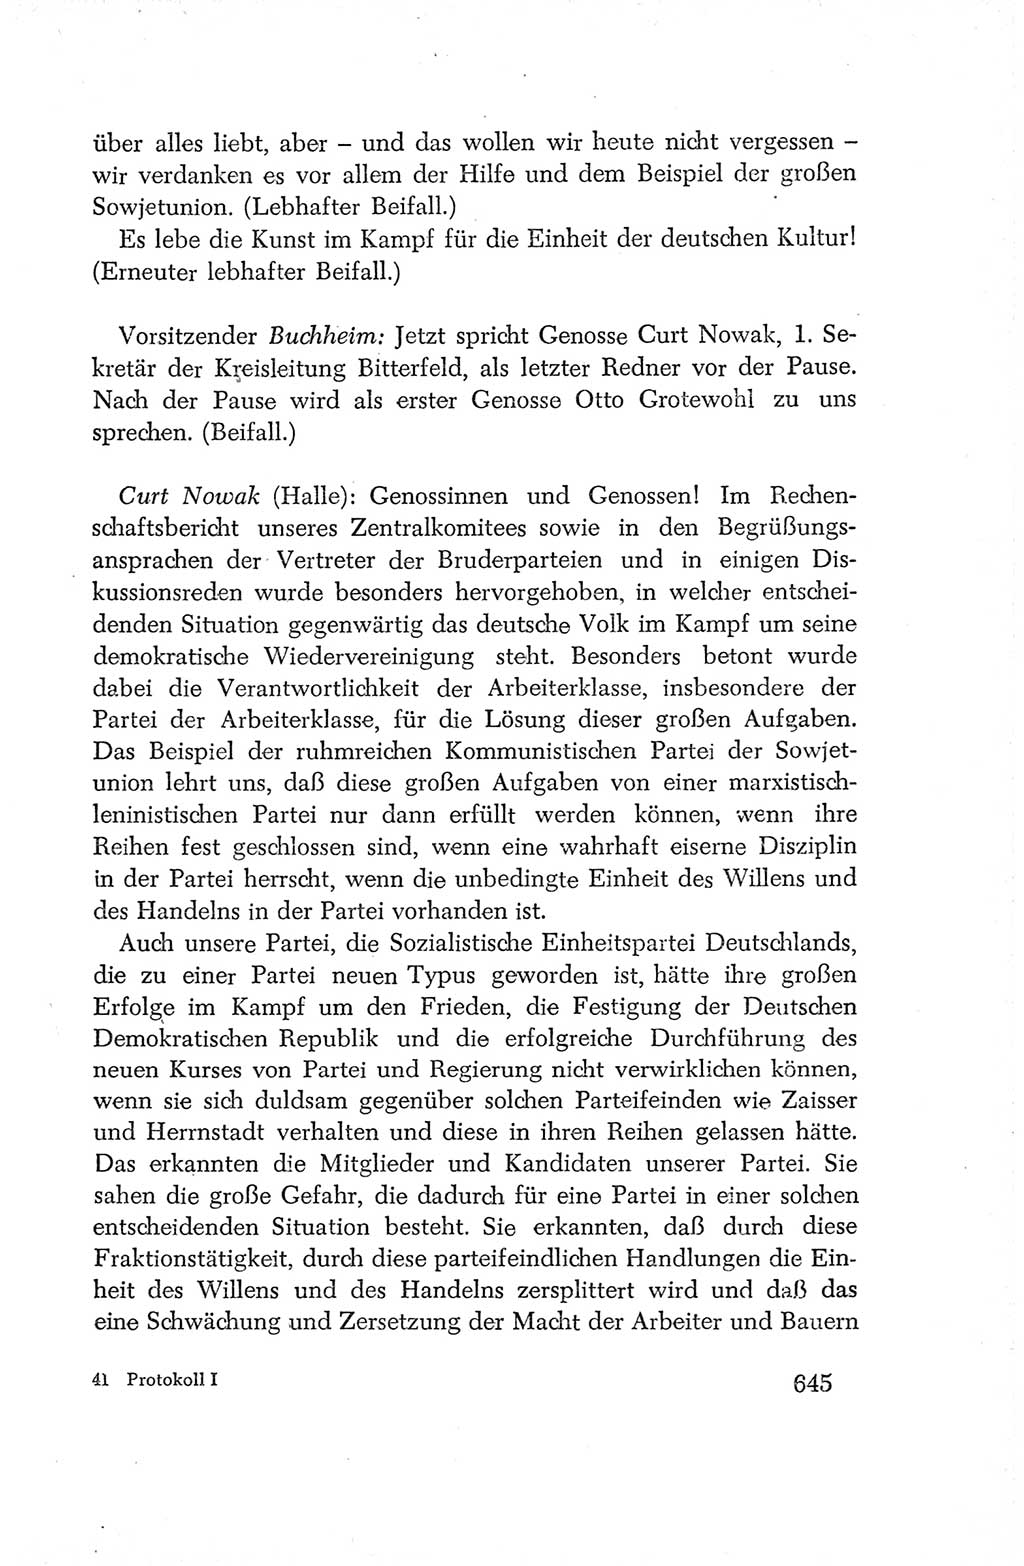 Protokoll der Verhandlungen des Ⅳ. Parteitages der Sozialistischen Einheitspartei Deutschlands (SED) [Deutsche Demokratische Republik (DDR)] 1954, Seite 645